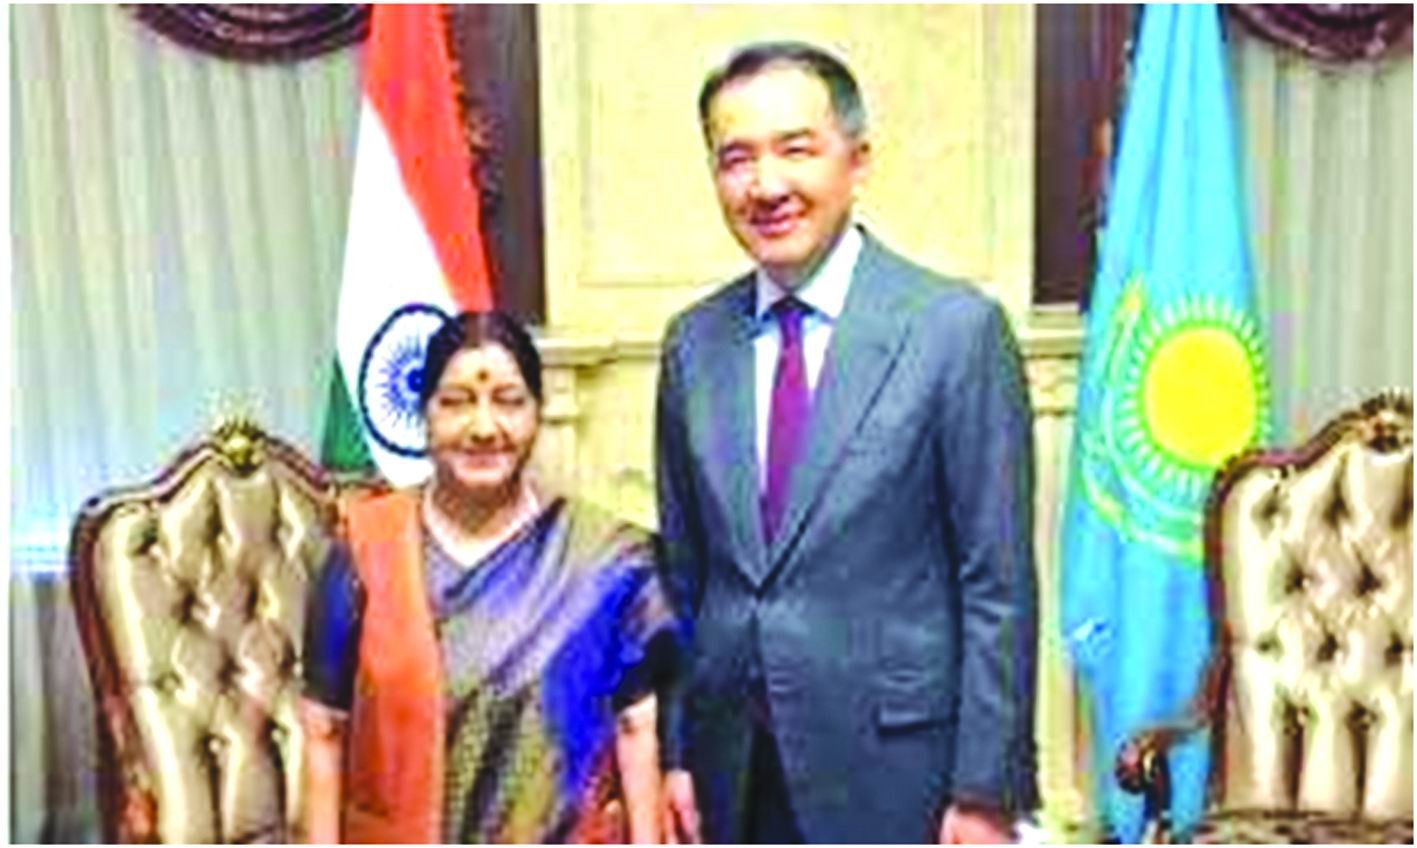 ભારત અને કઝાકિસ્તાન વચ્ચે વેપાર અને  સુરક્ષા સંબંધો સુધારવા સહમતિ